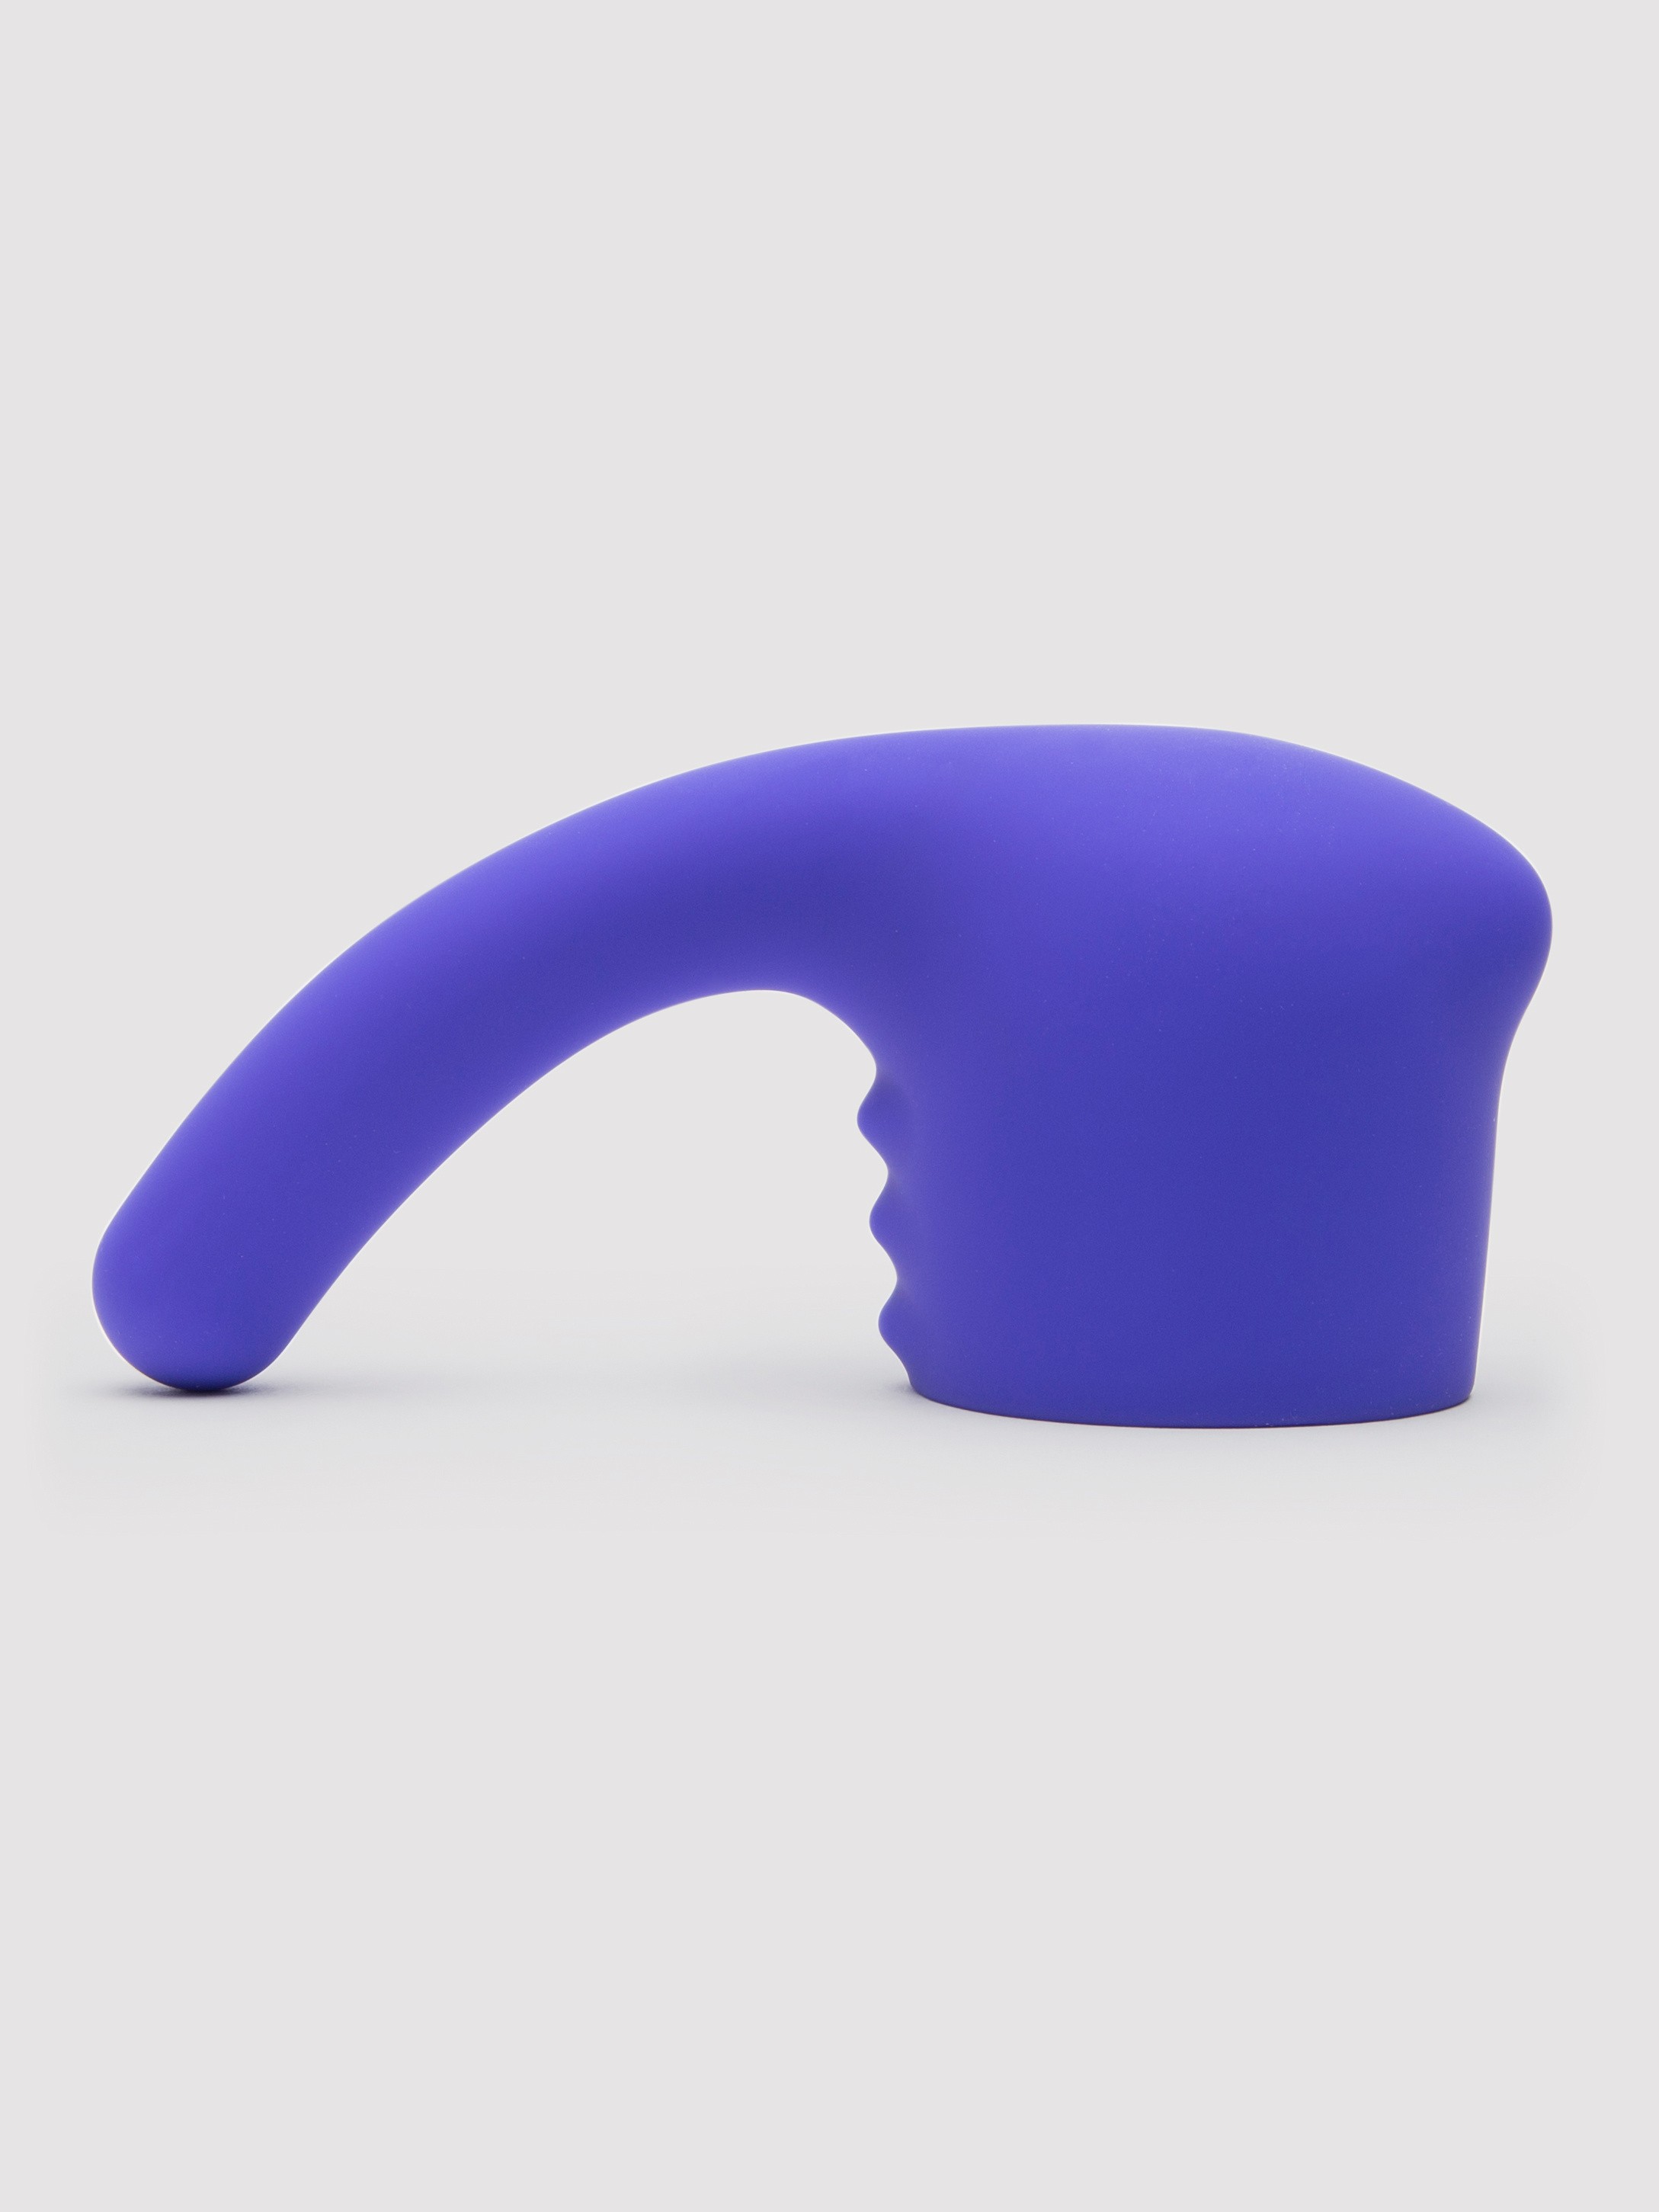 Lovehoney Deluxe Wand Silicone G-Spot Head Attachment - Purple